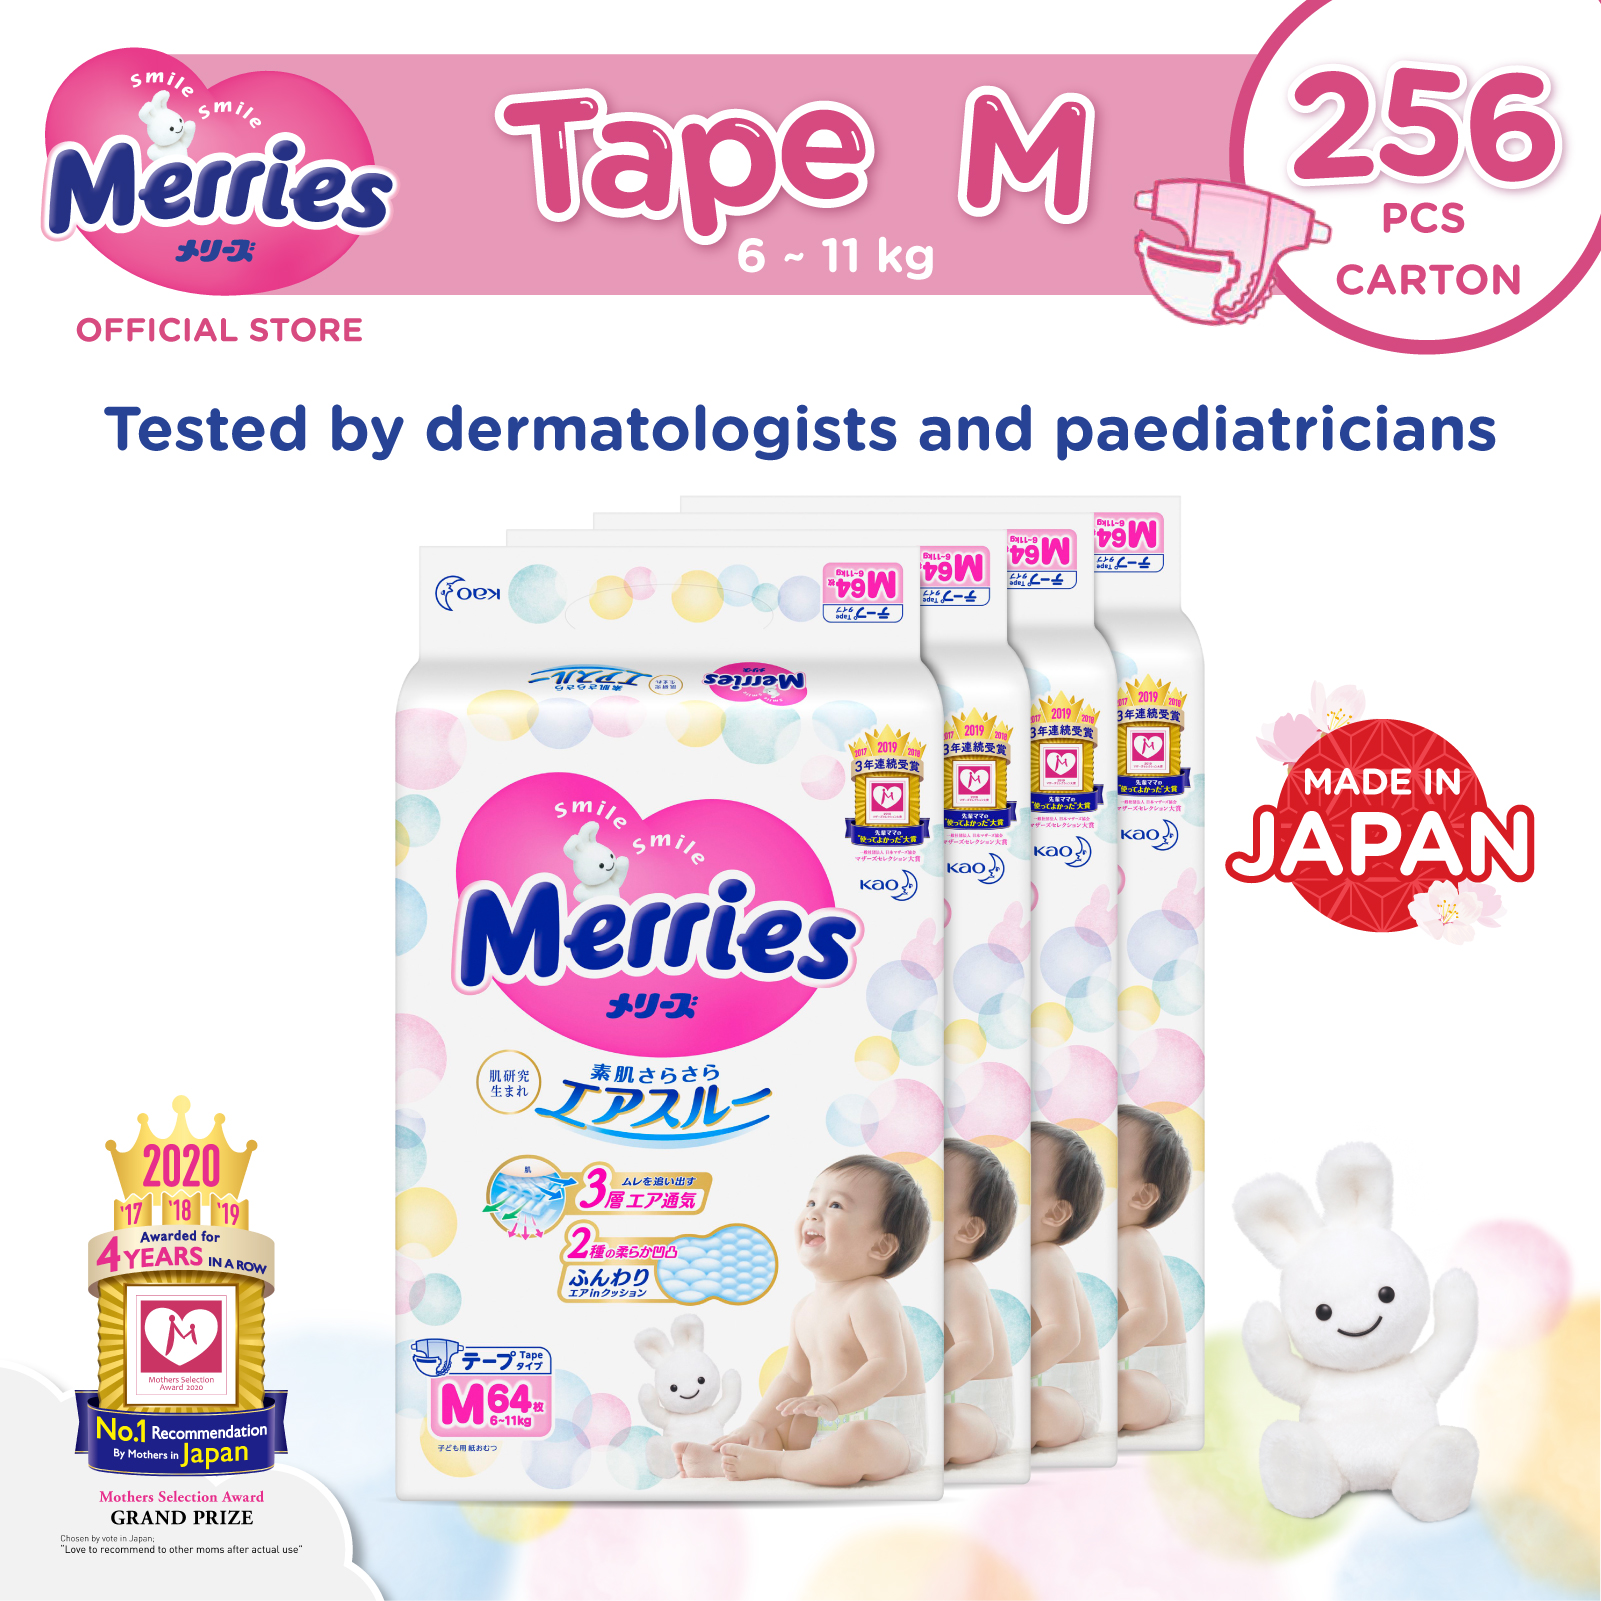 Merries Tape Diapers Carton M64s x 4 packs (6 - 11 kg)